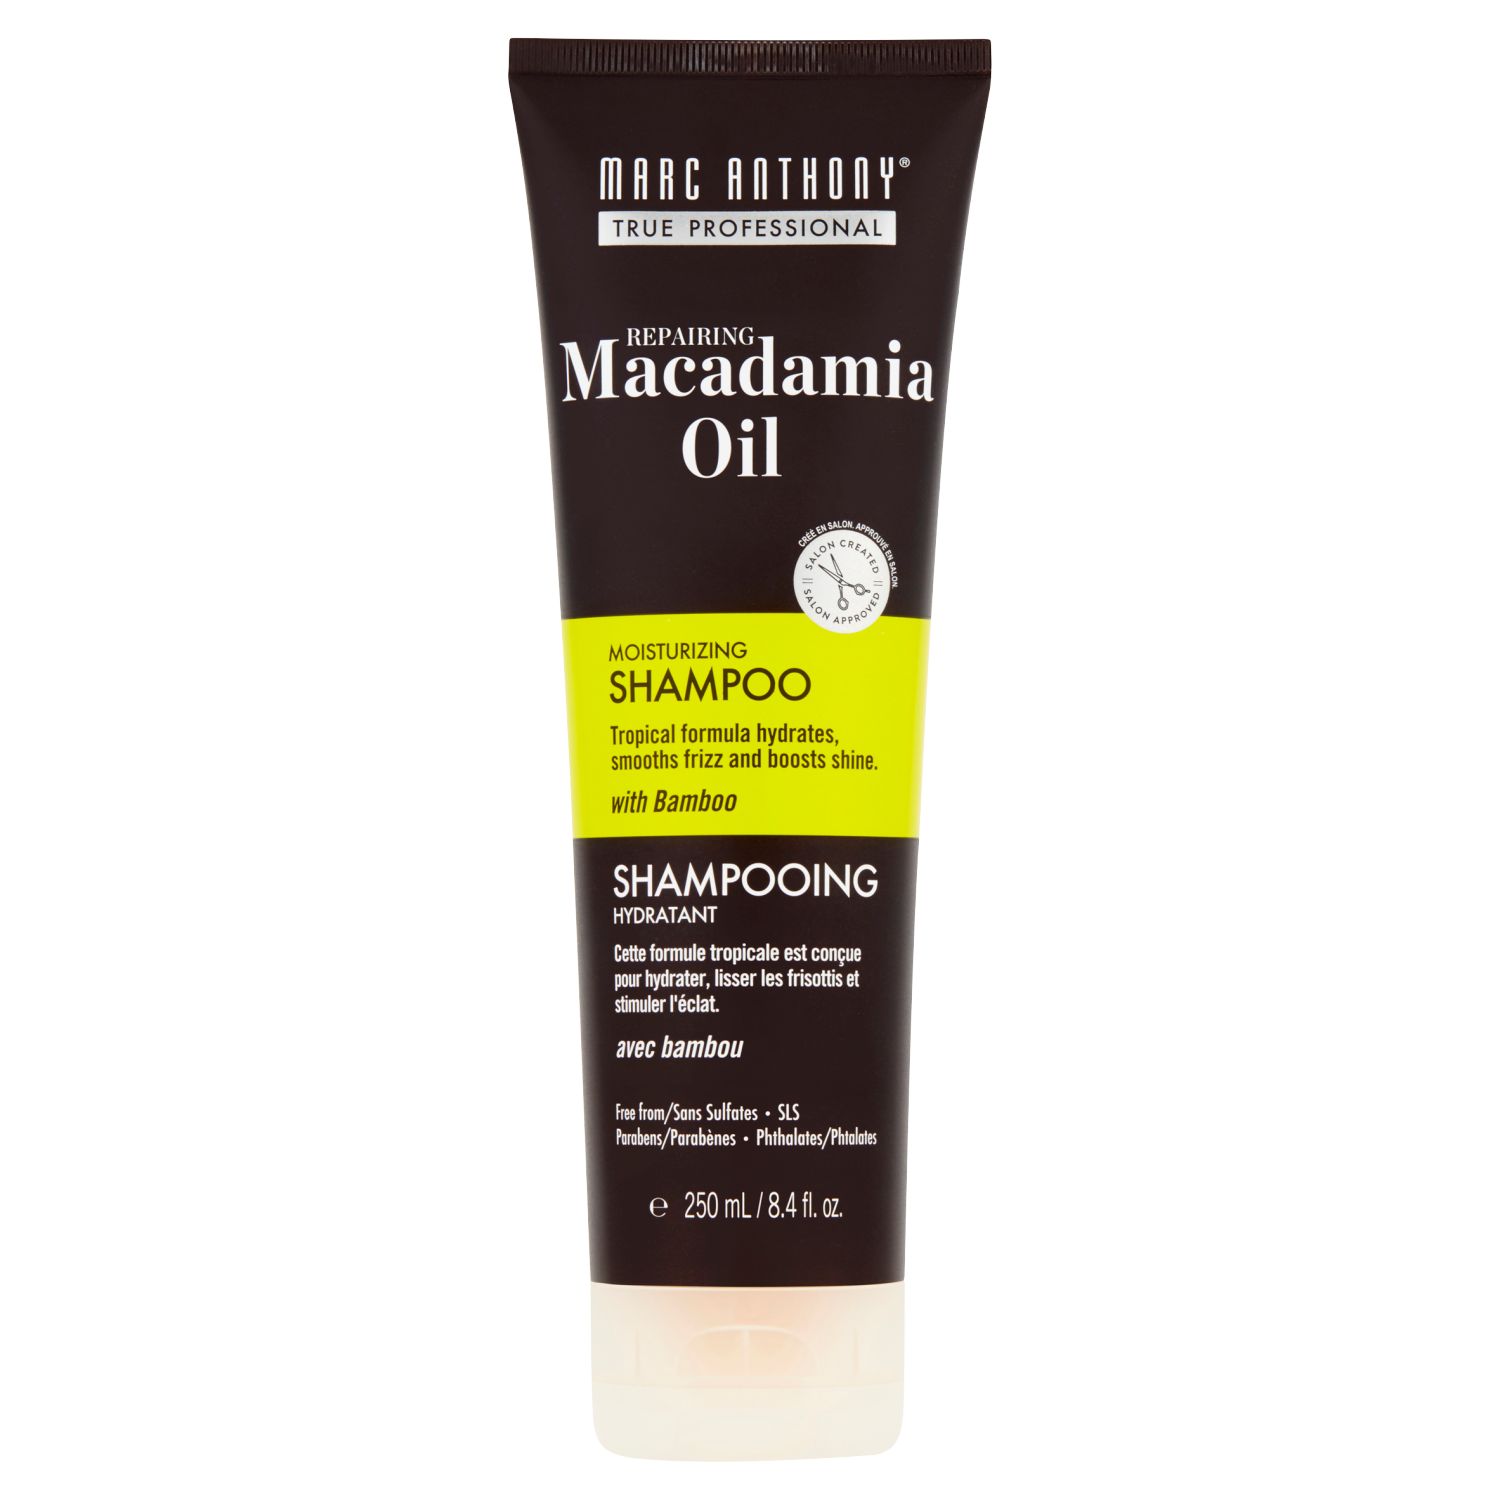 szampon do włosów marc anthony macadamia